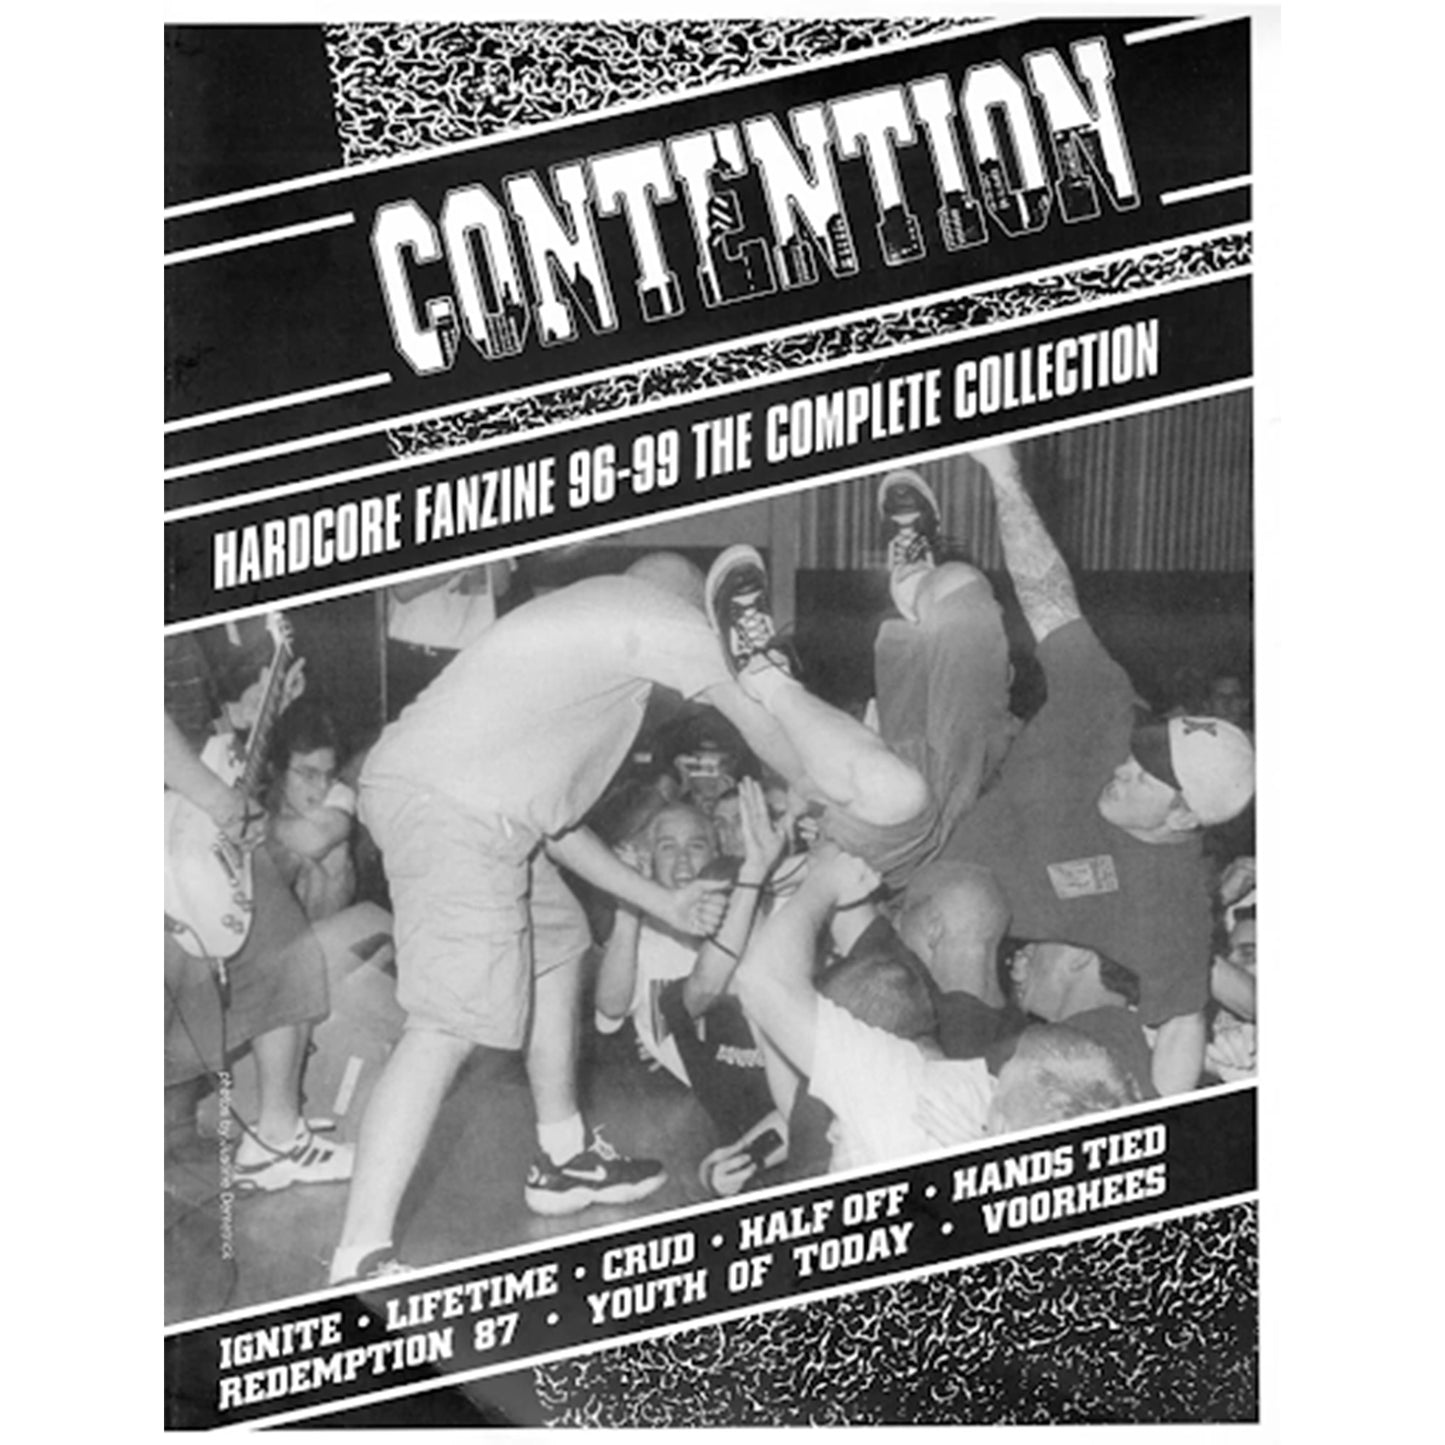 Contention, Hardcore Fanzine Anthology